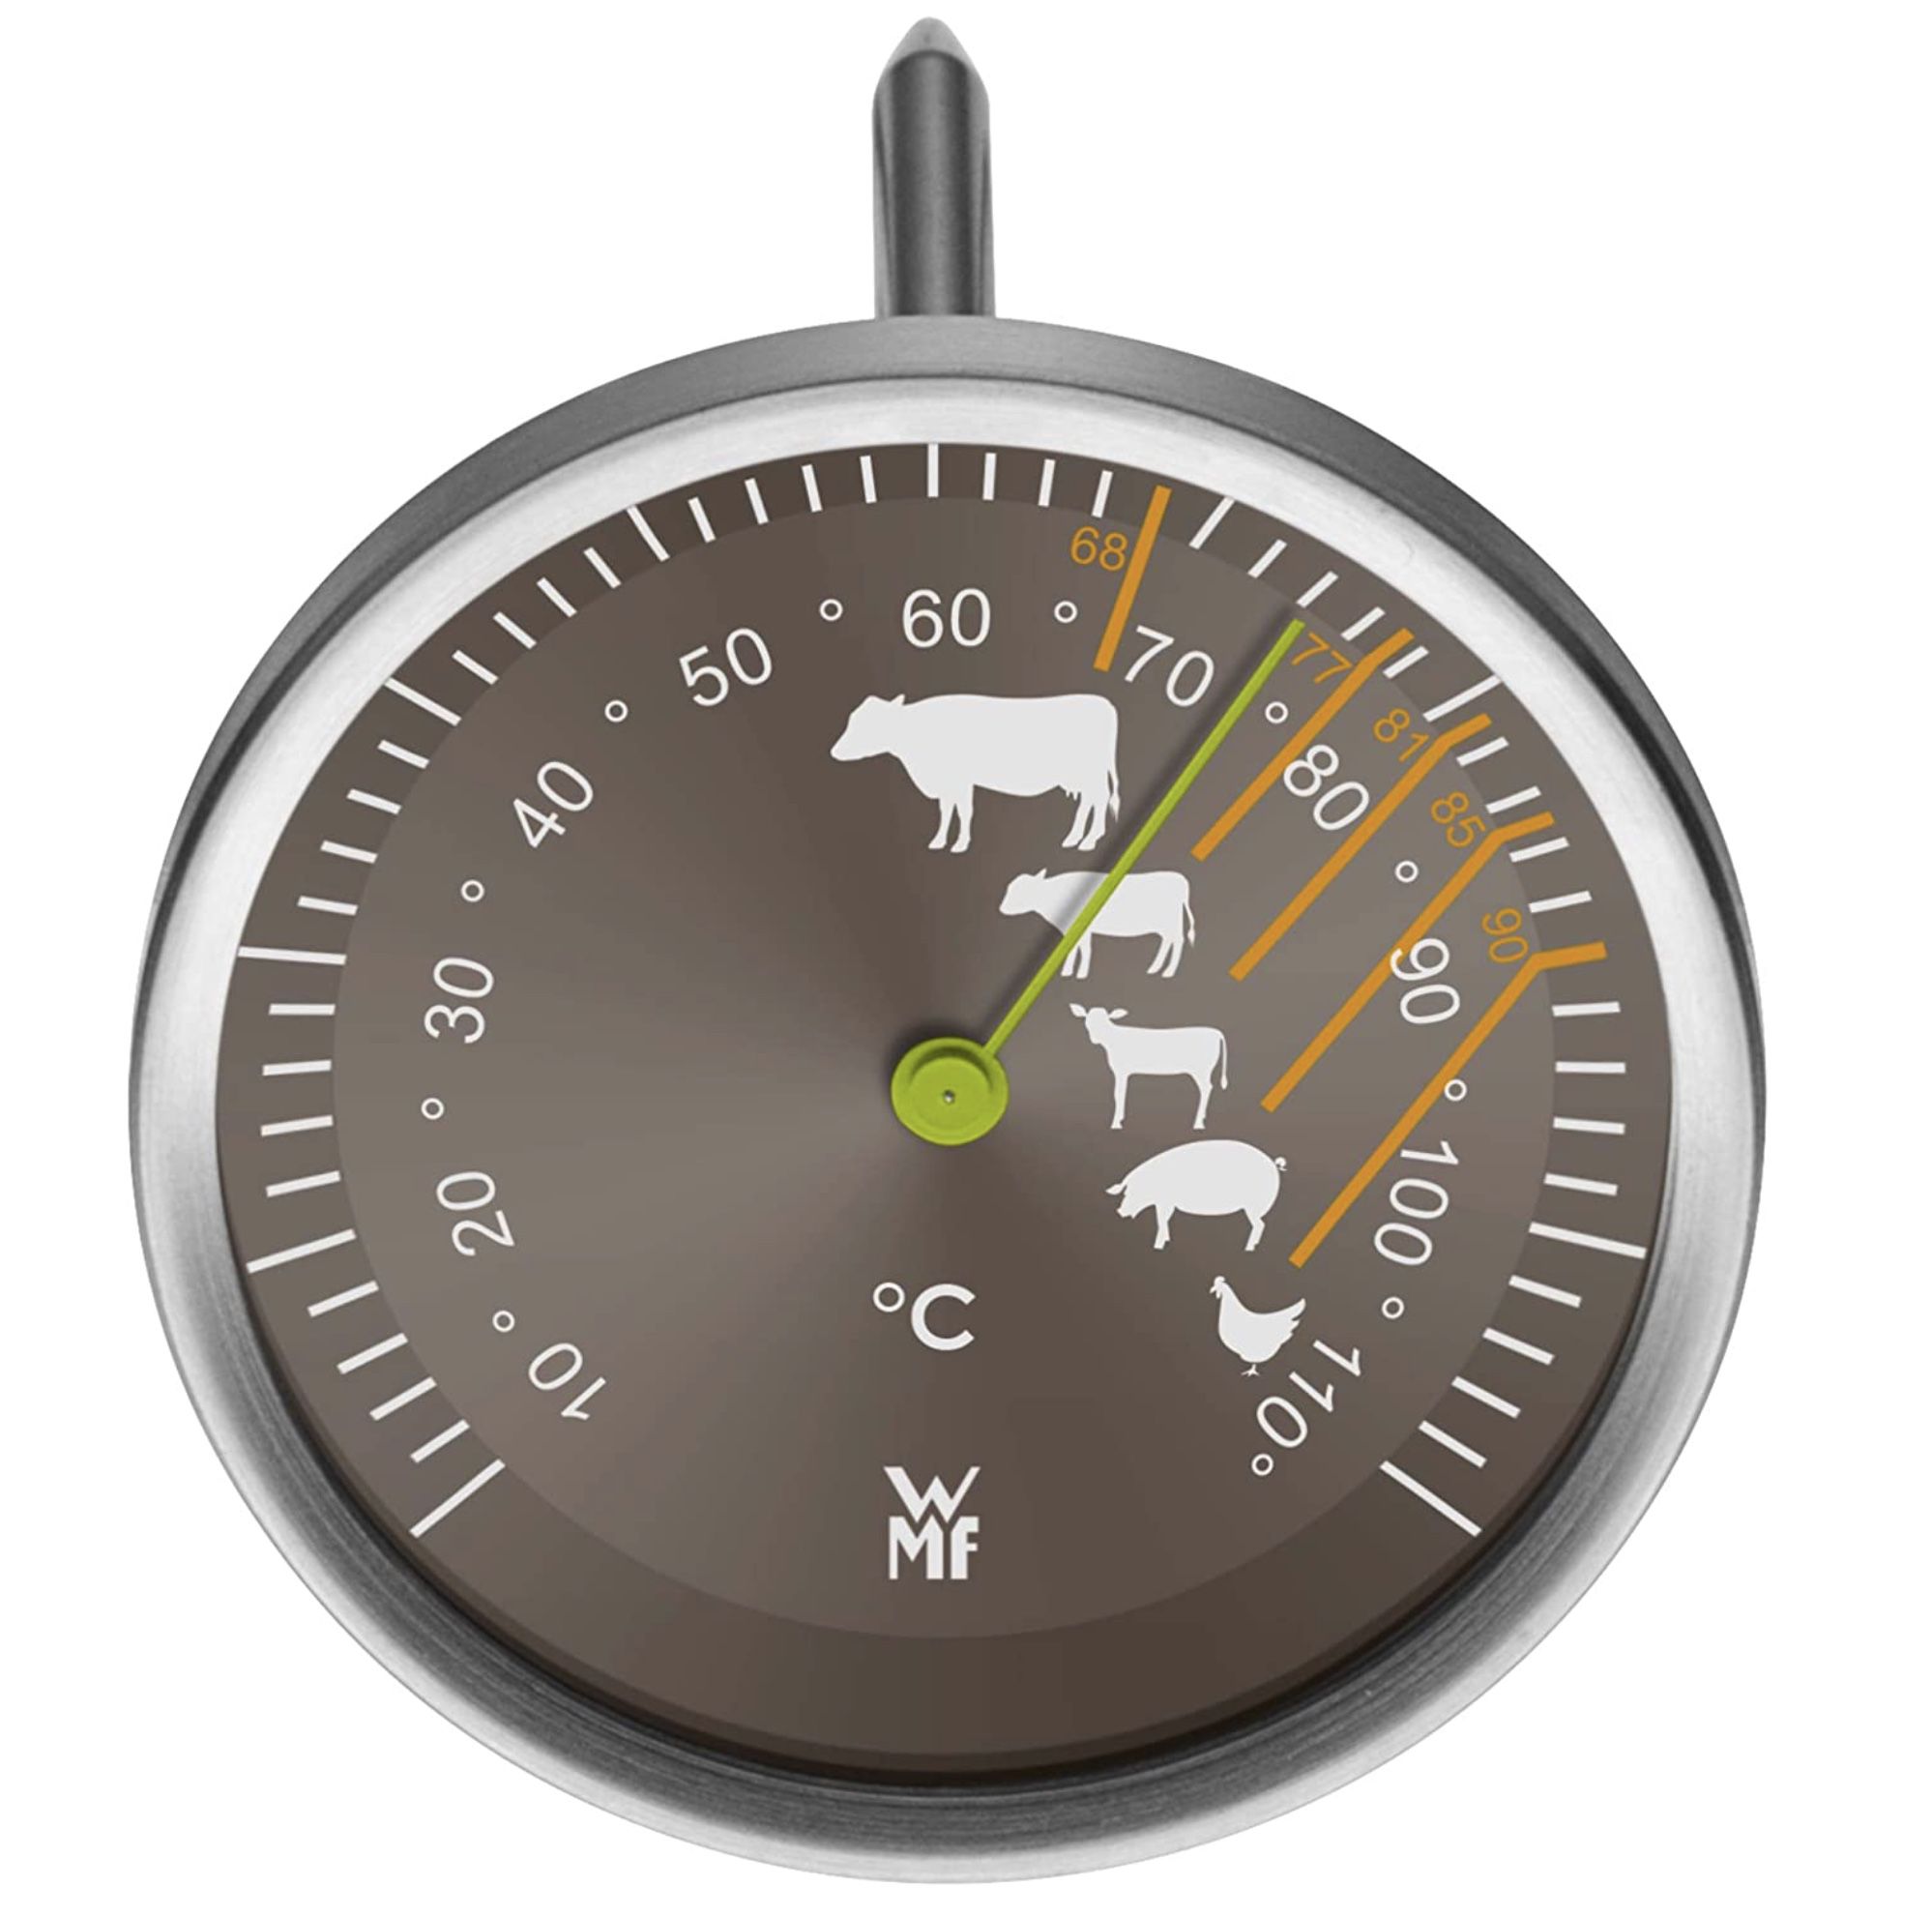 WMF Fleischthermometer analog für 13,99€ (statt 18€)   Prime